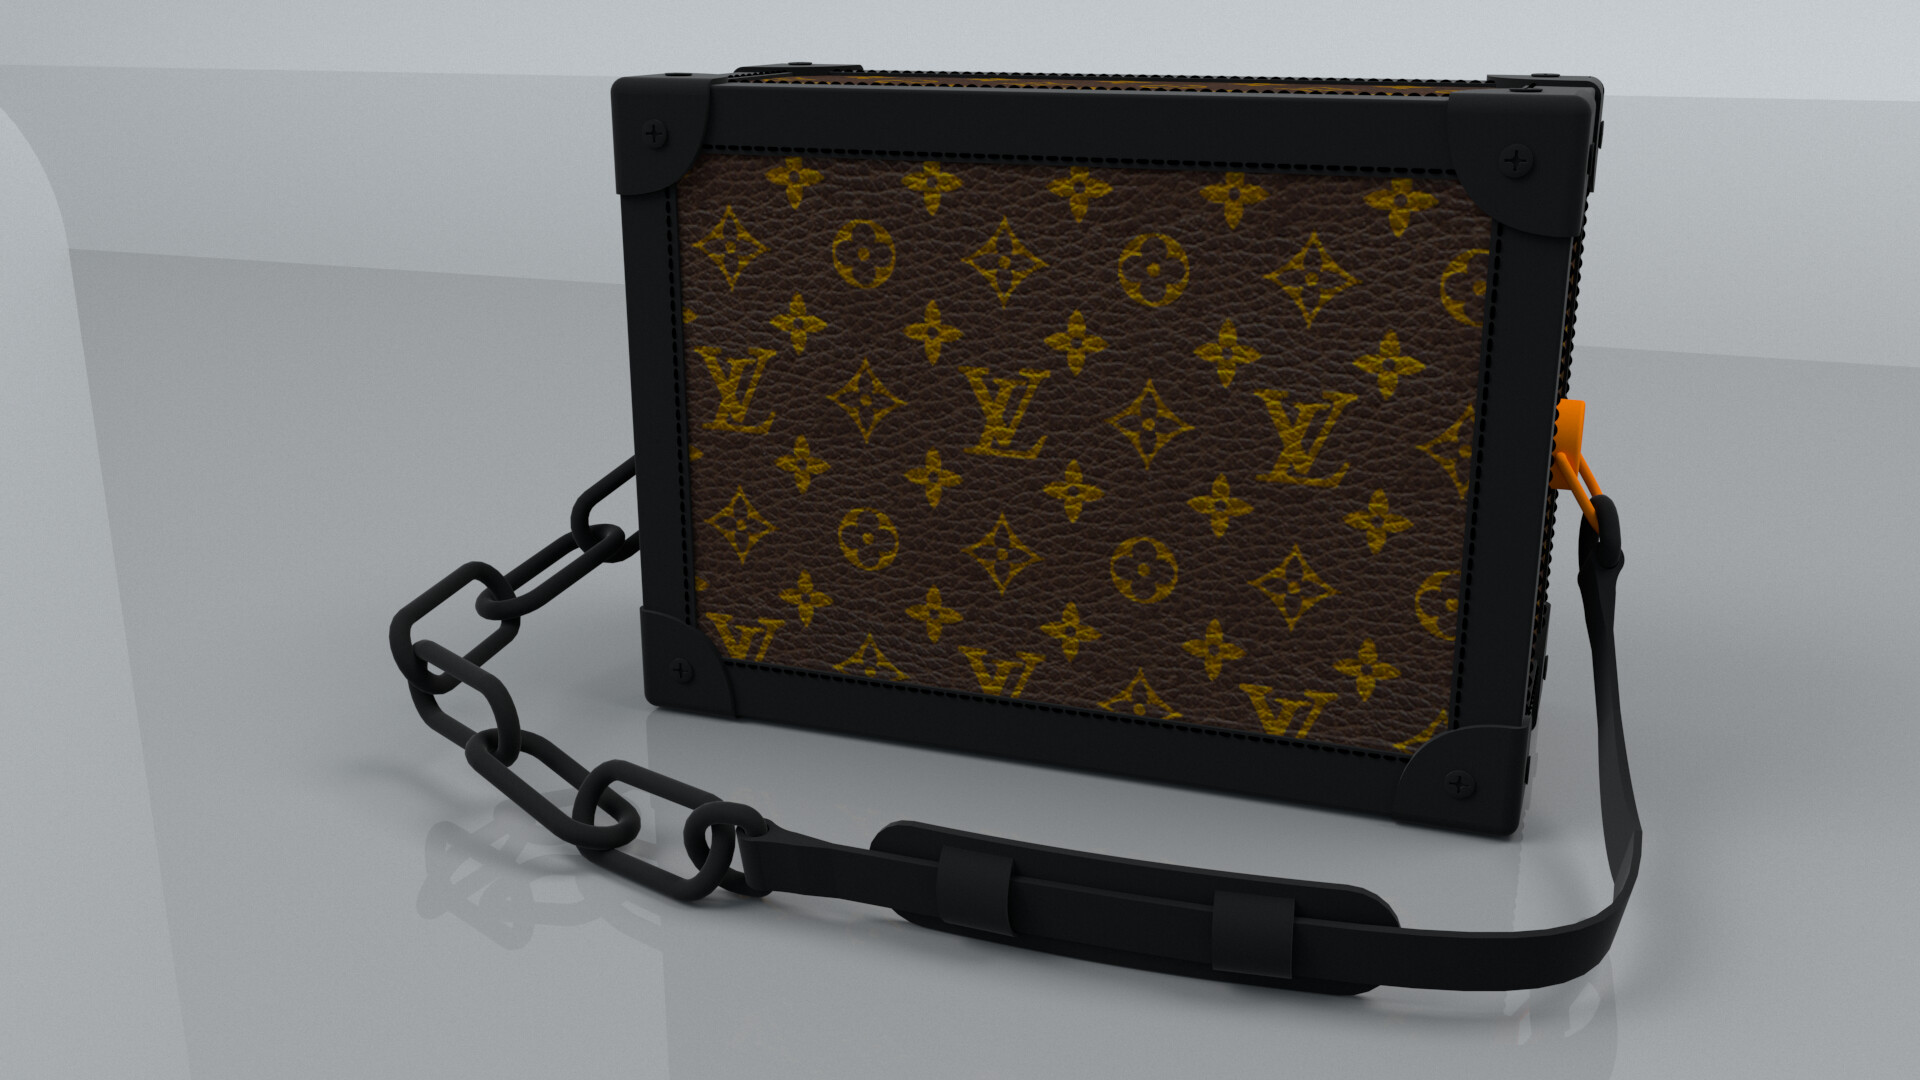 ArtStation - Louis Vuitton Soft Trunk LV bag